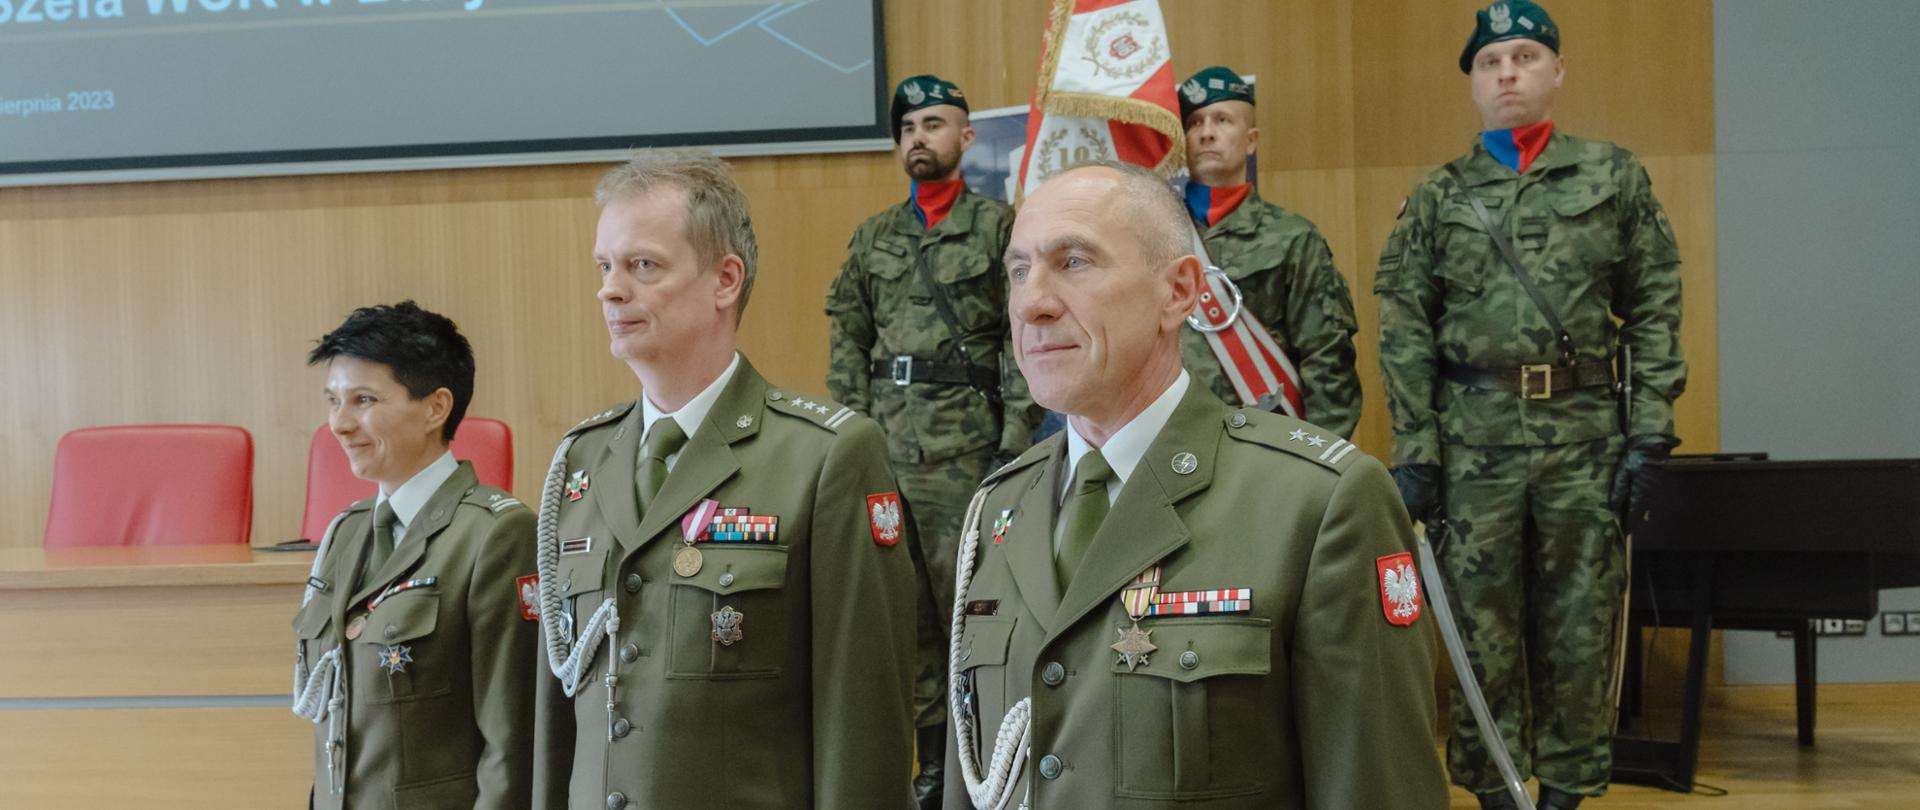 Uroczyste przekazanie obowiązków Szefa Wojskowego Centrum Rekrutacji w Białymstoku